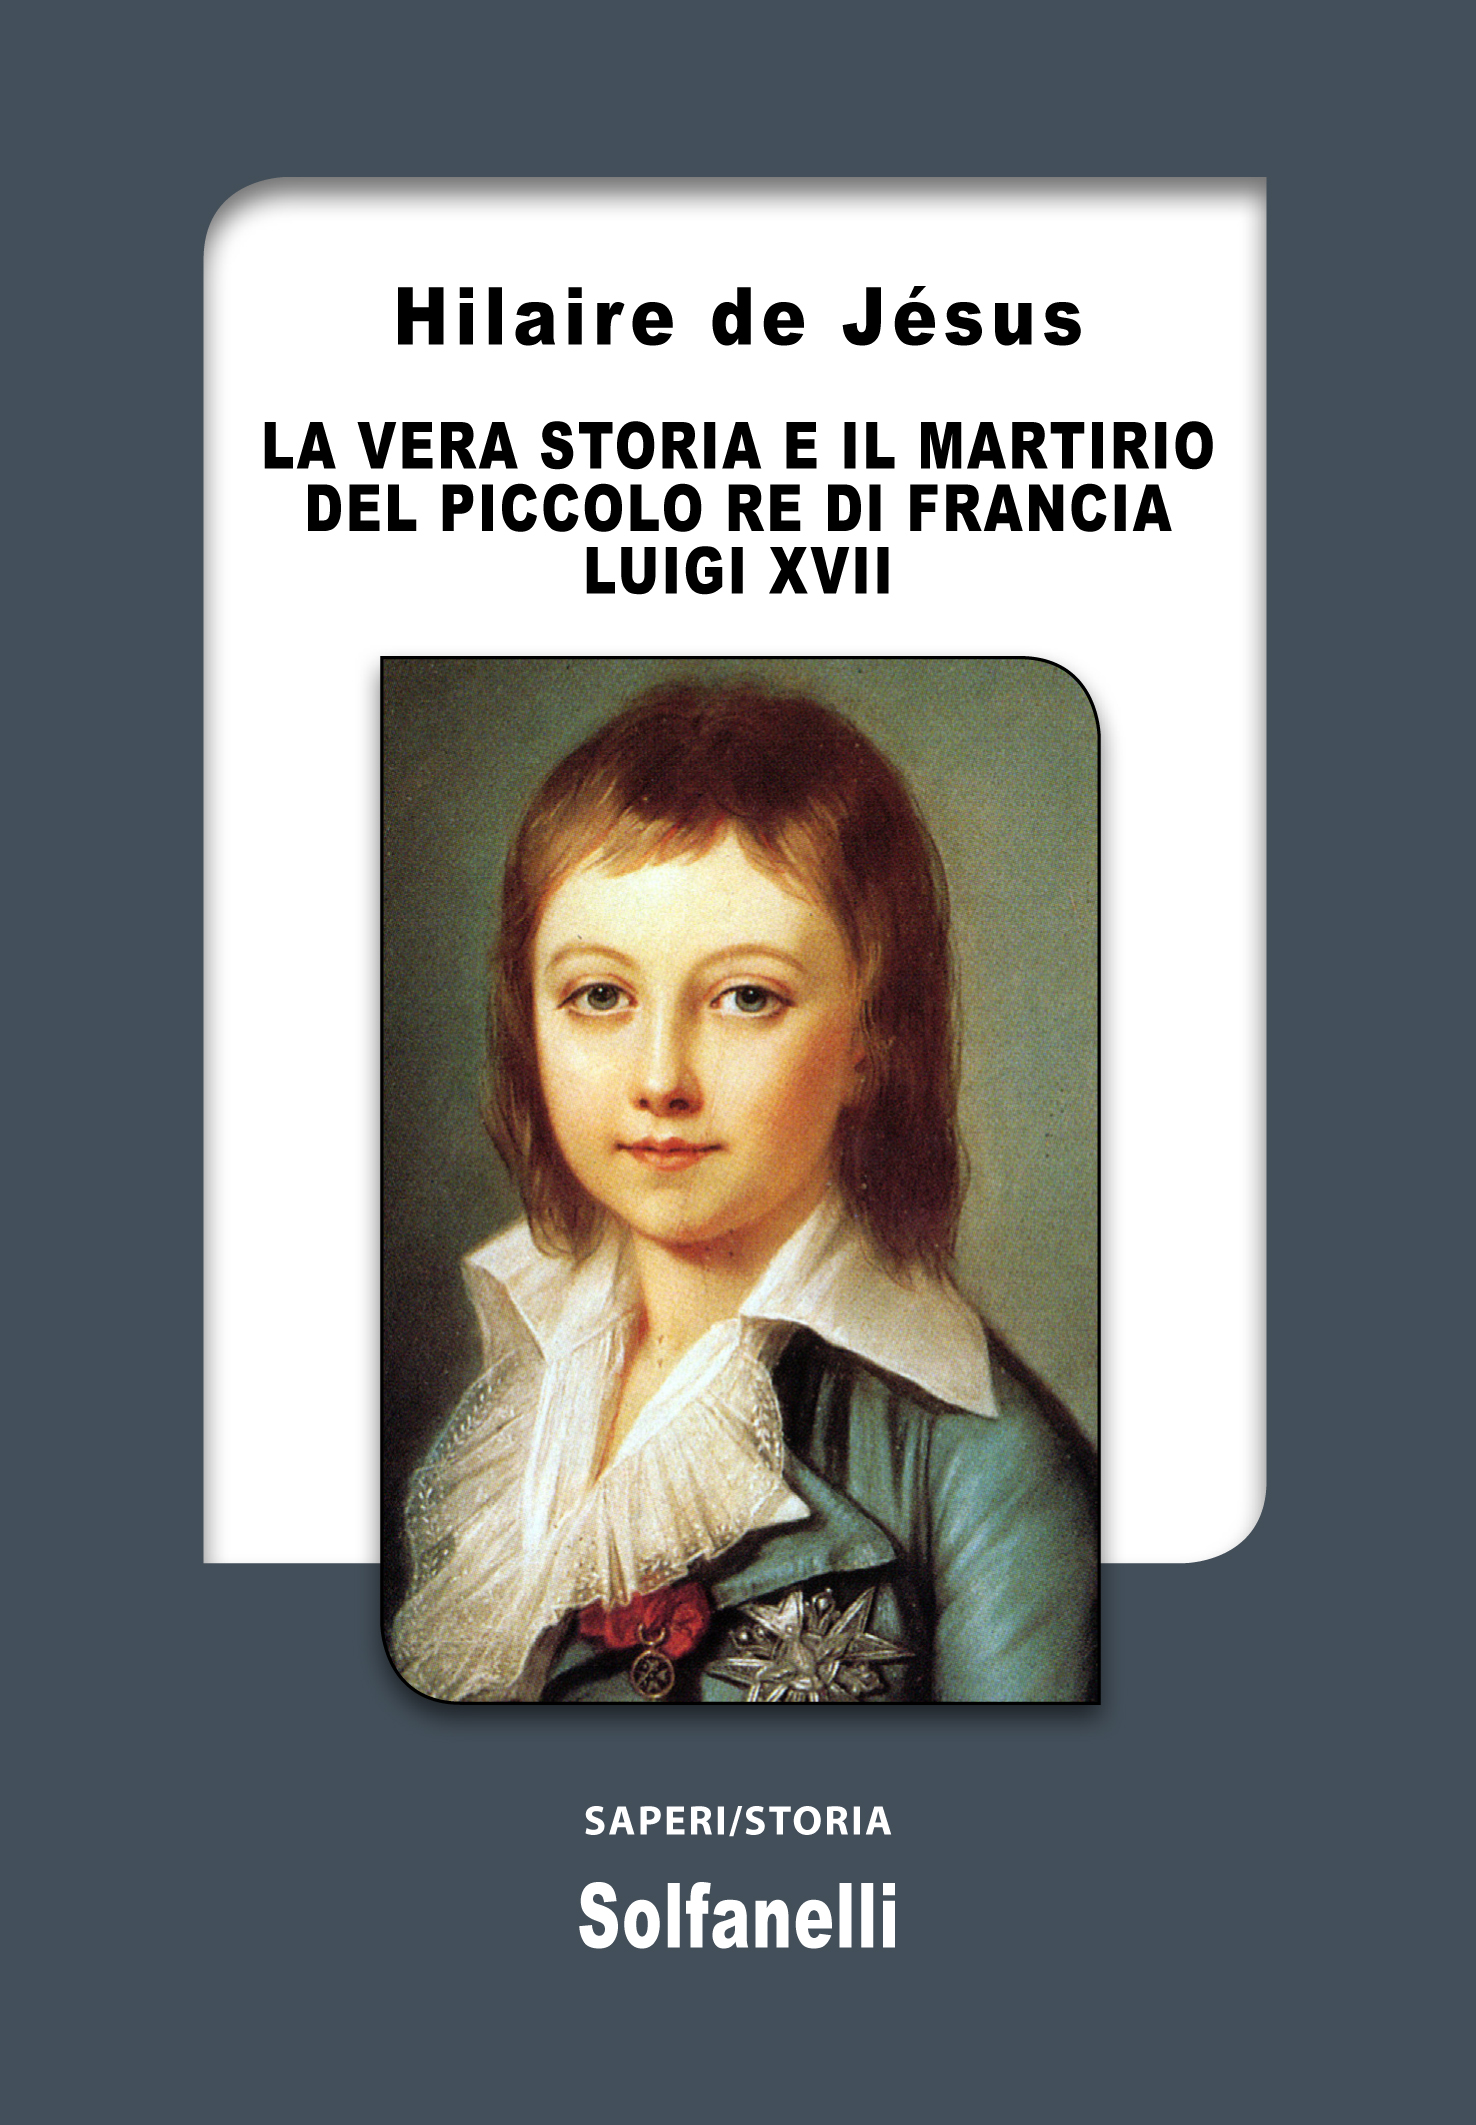 LA VERA STORIA E IL MARTIRIO DEL PICCOLO RE LUIGI XVII